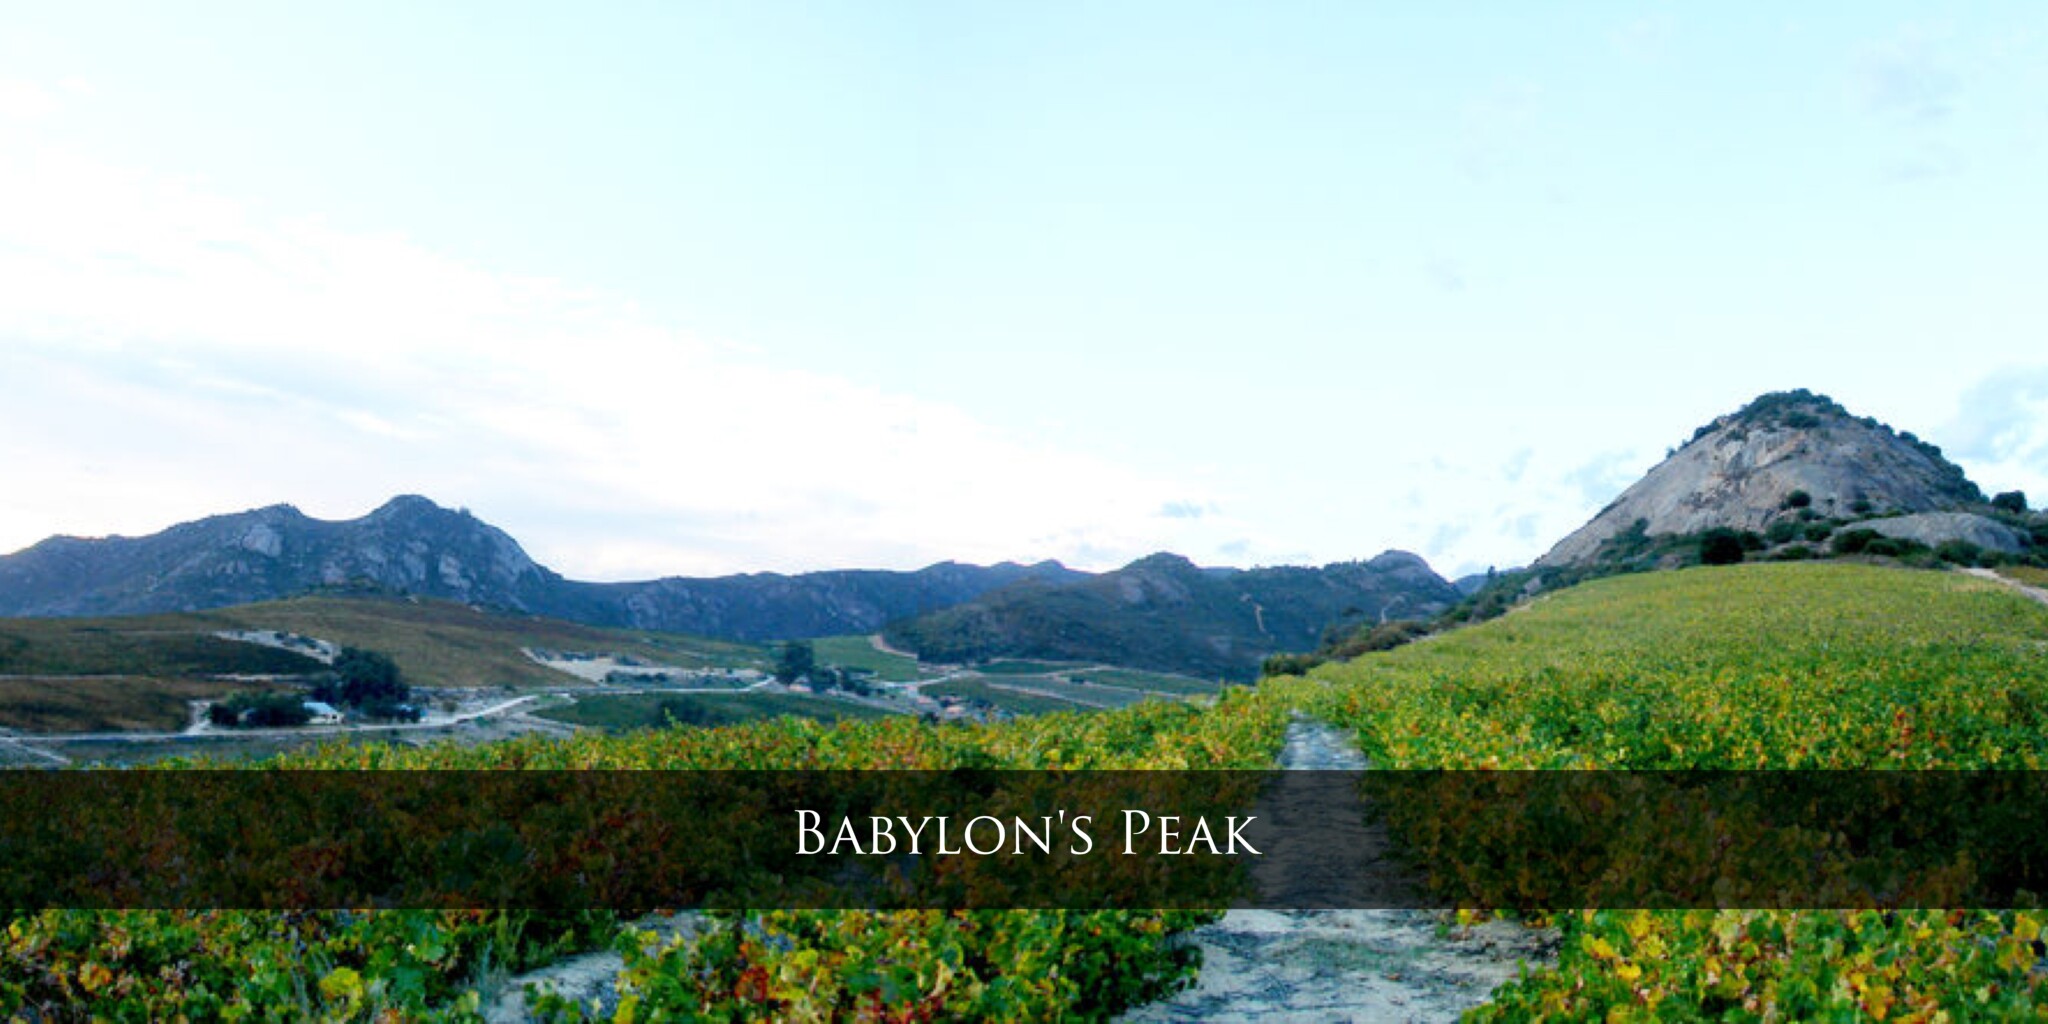 Babylon’s Peak